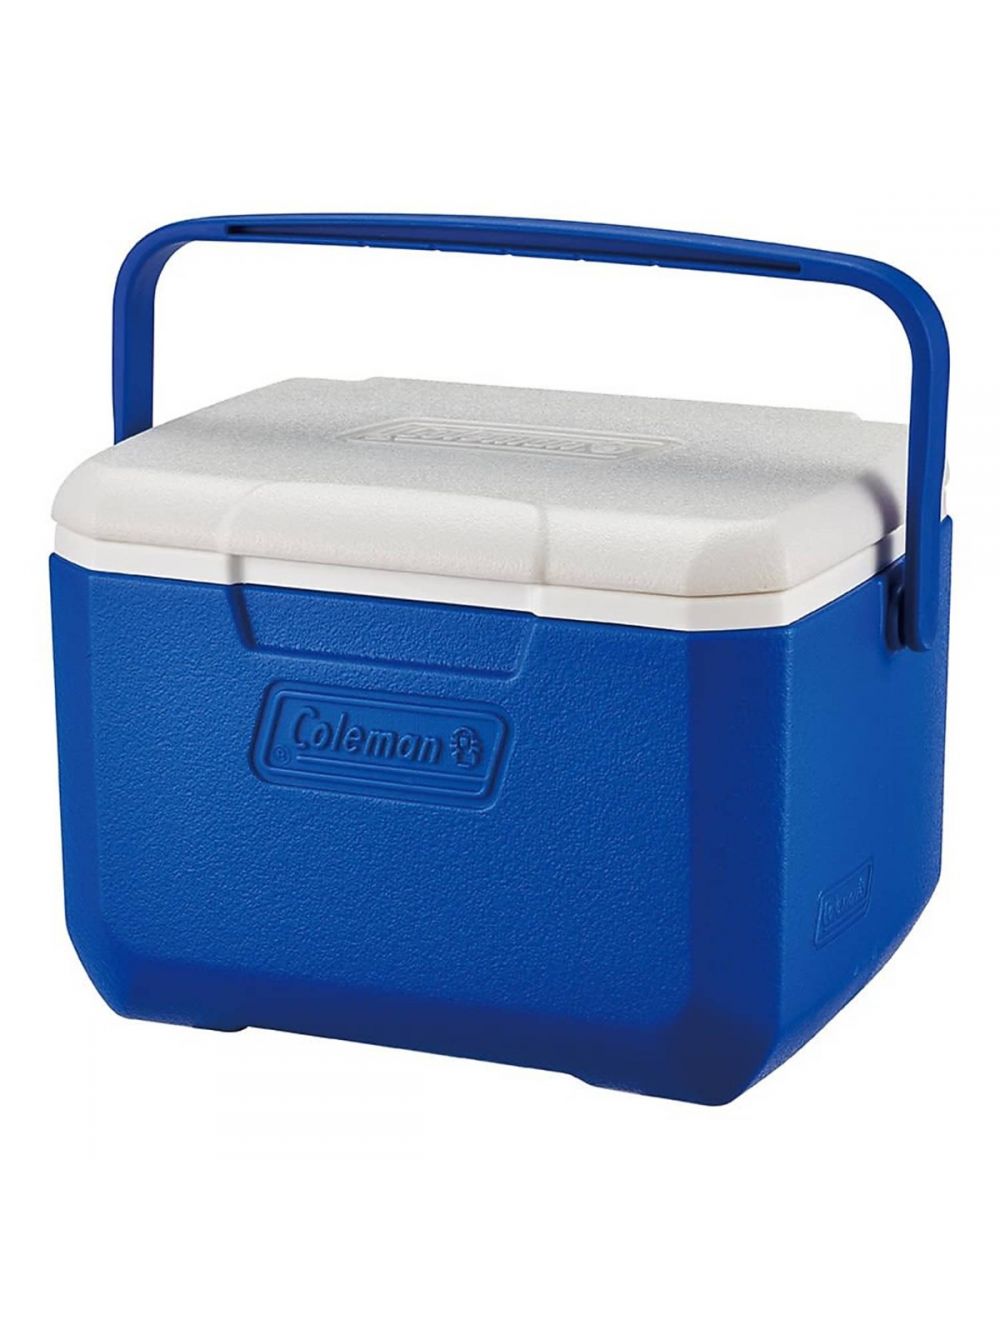 Coleman 5QT/4.7 Ltr Cooler Blue, coleman ice box, coleman box cooler, coleman ice box cooler, ice box cooler